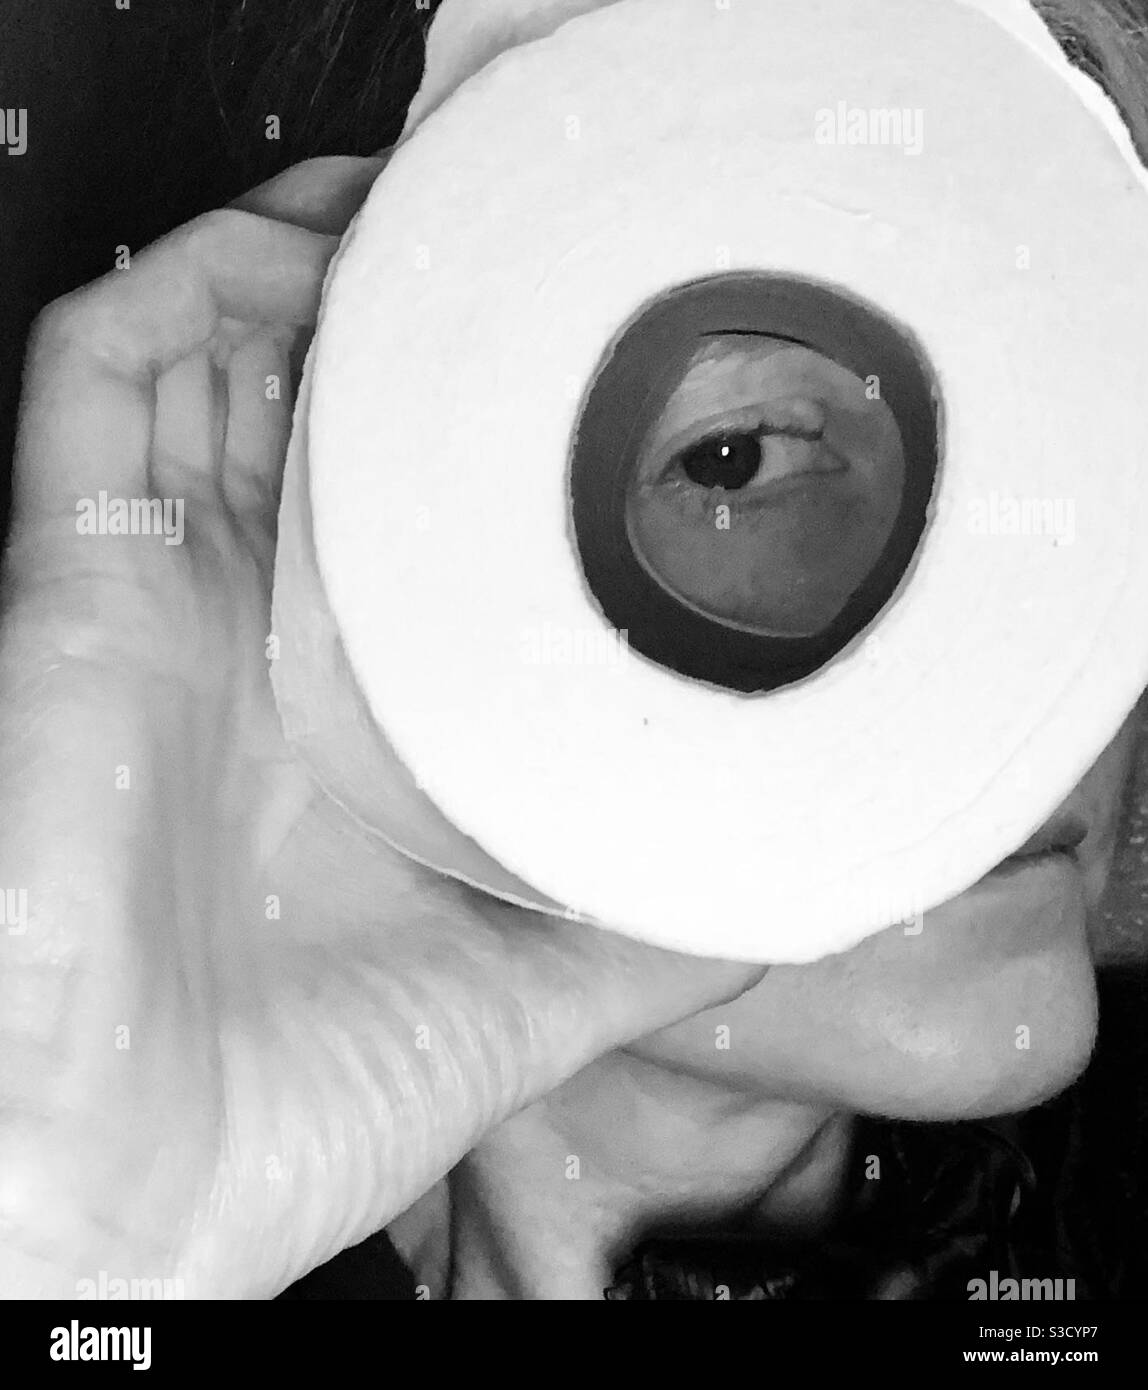 Una perspectiva única - persona mirando a través de un rollo de papel  higiénico que muestra un ojo y pestañas/ piel justa Foto-telescopio  mujer-blanco y negro Fotografía de stock - Alamy